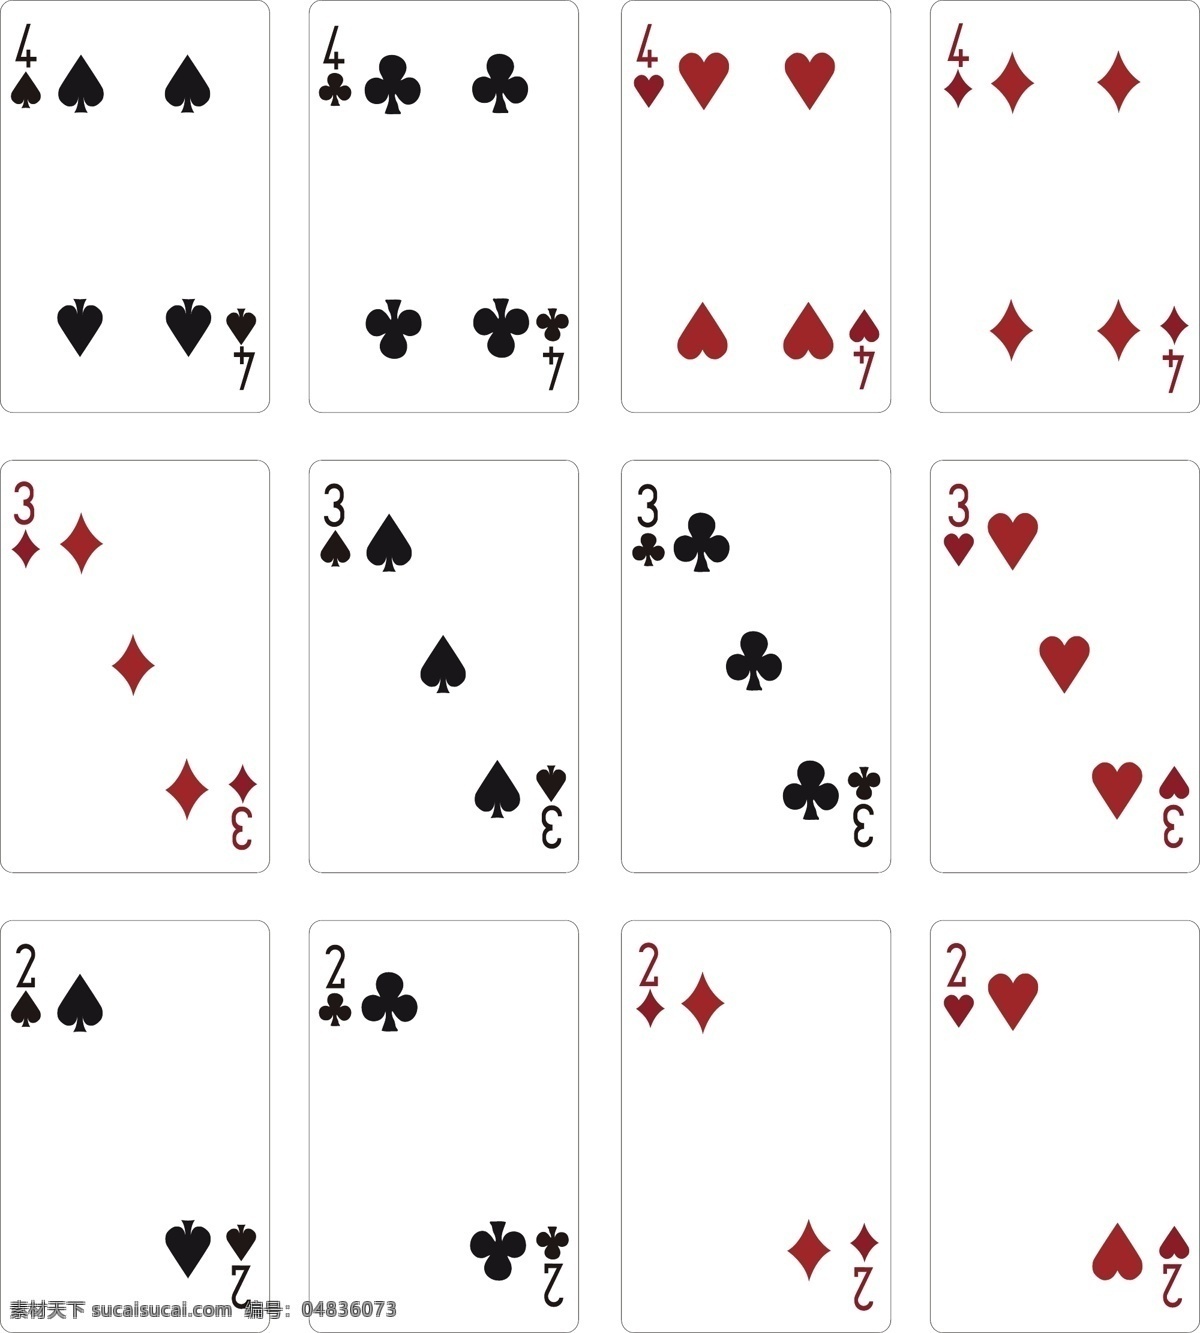 尼科 尼亚 扑克牌 卡牌 卡片 扑克 扑克牌设计 其他设计 矢量 矢量图